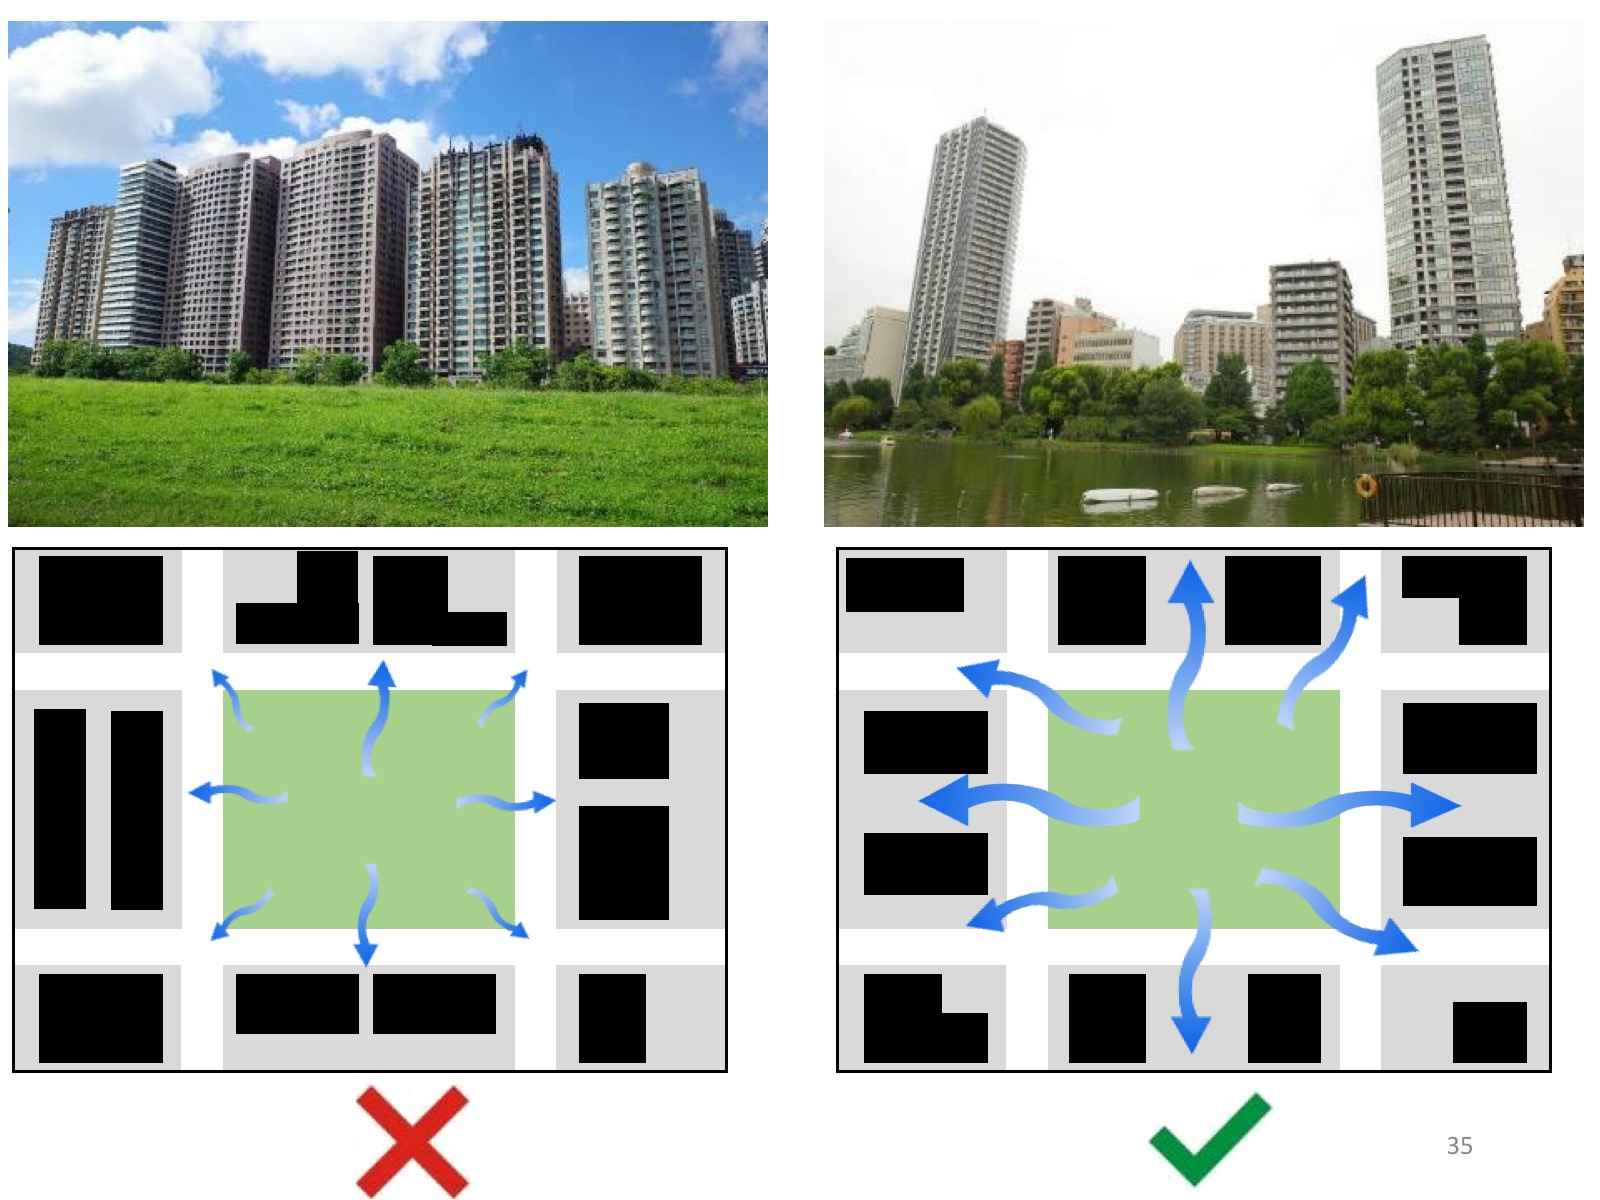 建商往往會將公園第一排的戶數撐到最大，但建築只要「側身」，就能避免形成讓城市悶熱的「屏風效應」。圖片來源：林子平